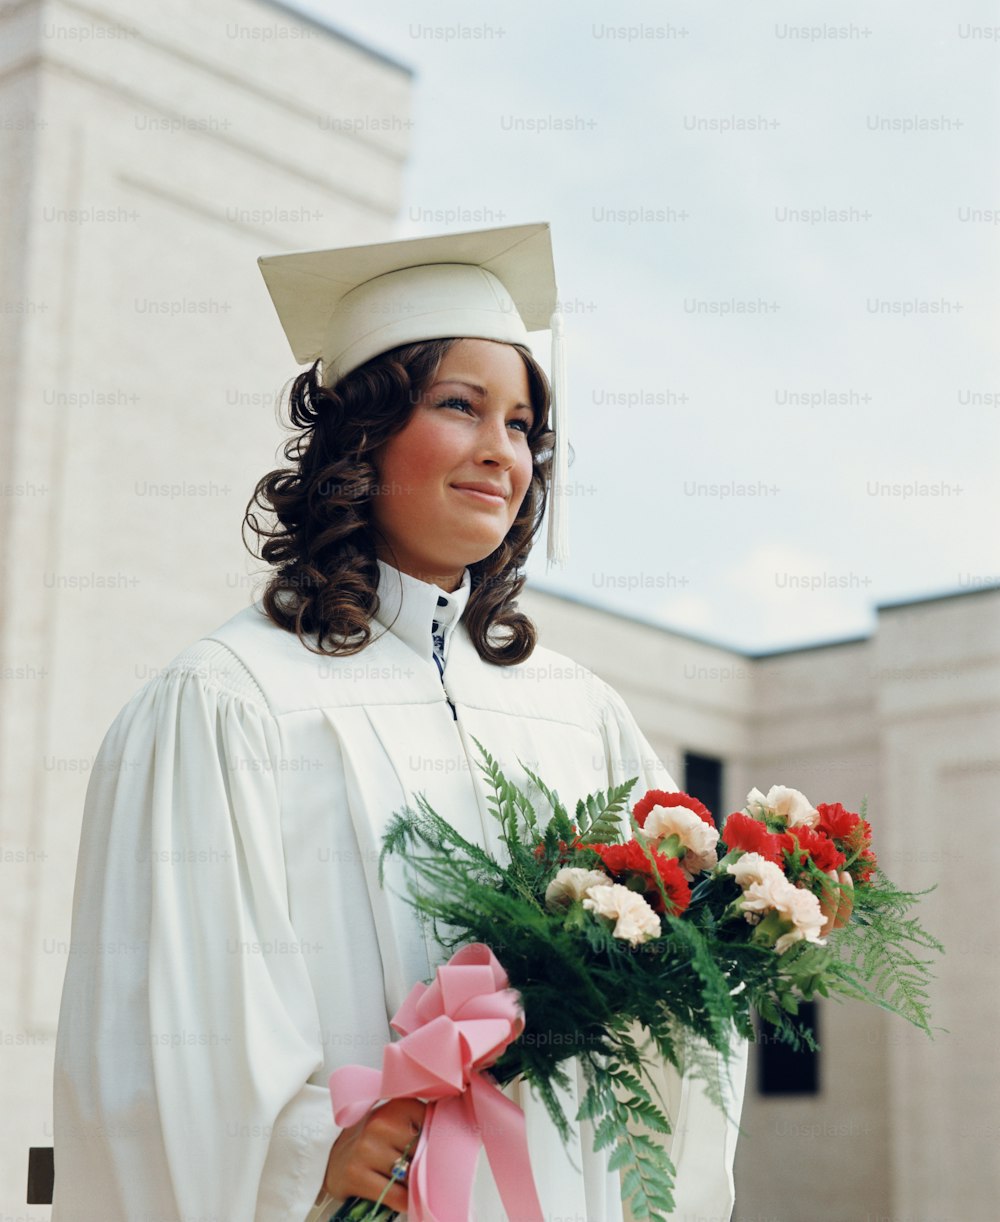 ESTADOS UNIDOS - CIRCA 1970s: Estudiante adolescente vestido con túnicas blancas y mortero, sosteniendo un ramo de flores en la graduación.